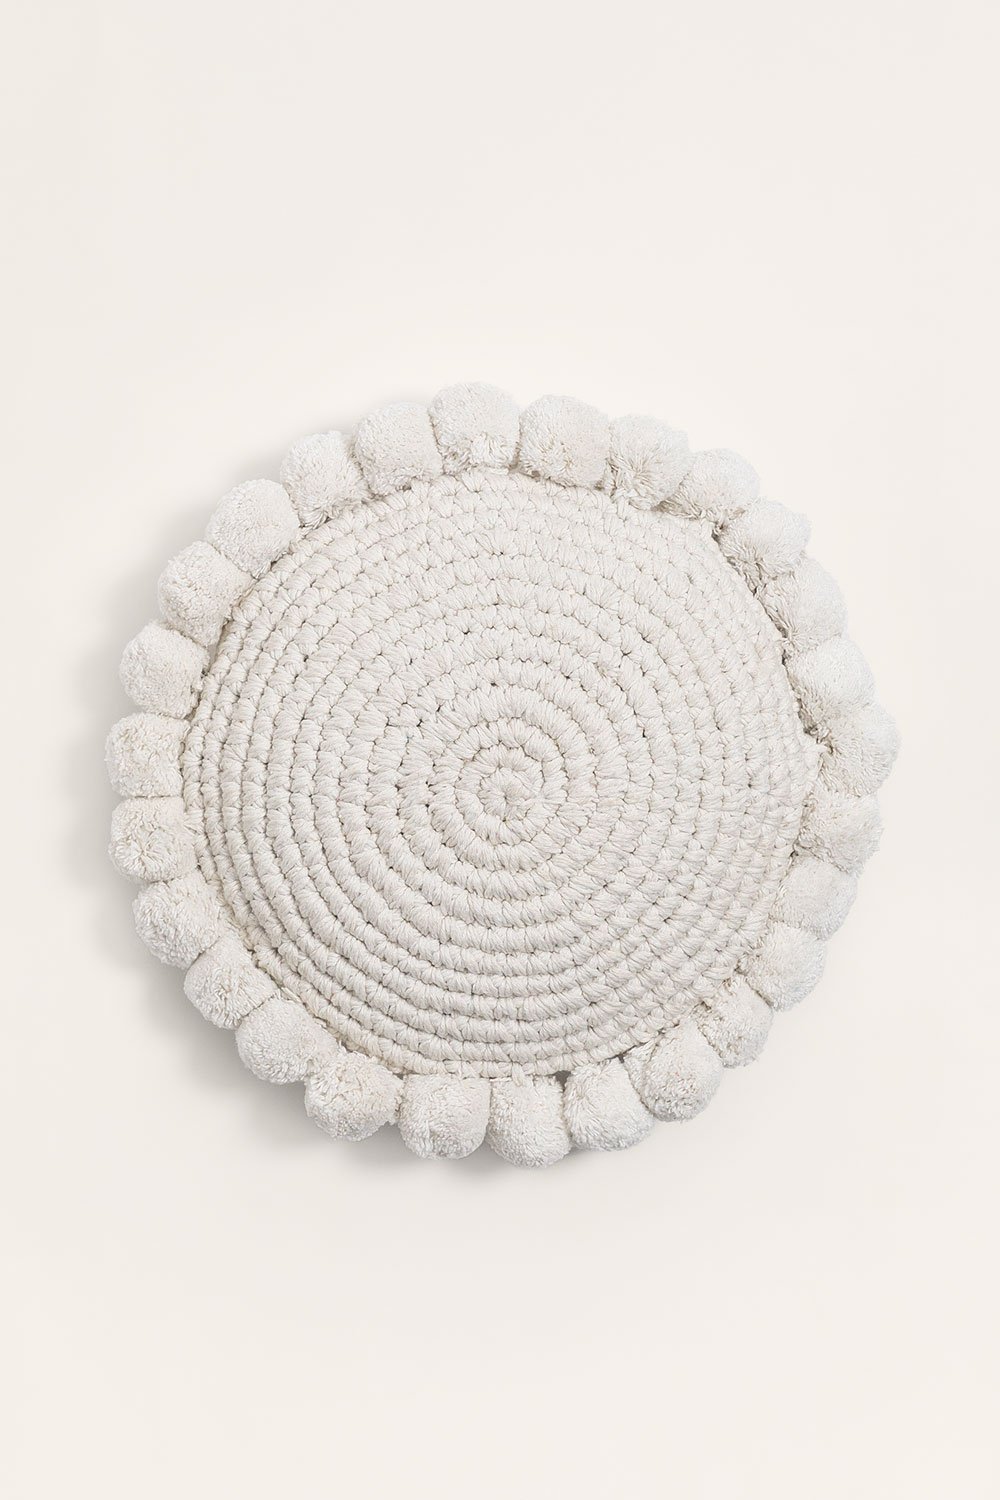 Okrągła poduszka z bawełny (Ø30 cm) Yilda, obrazek w galerii 1